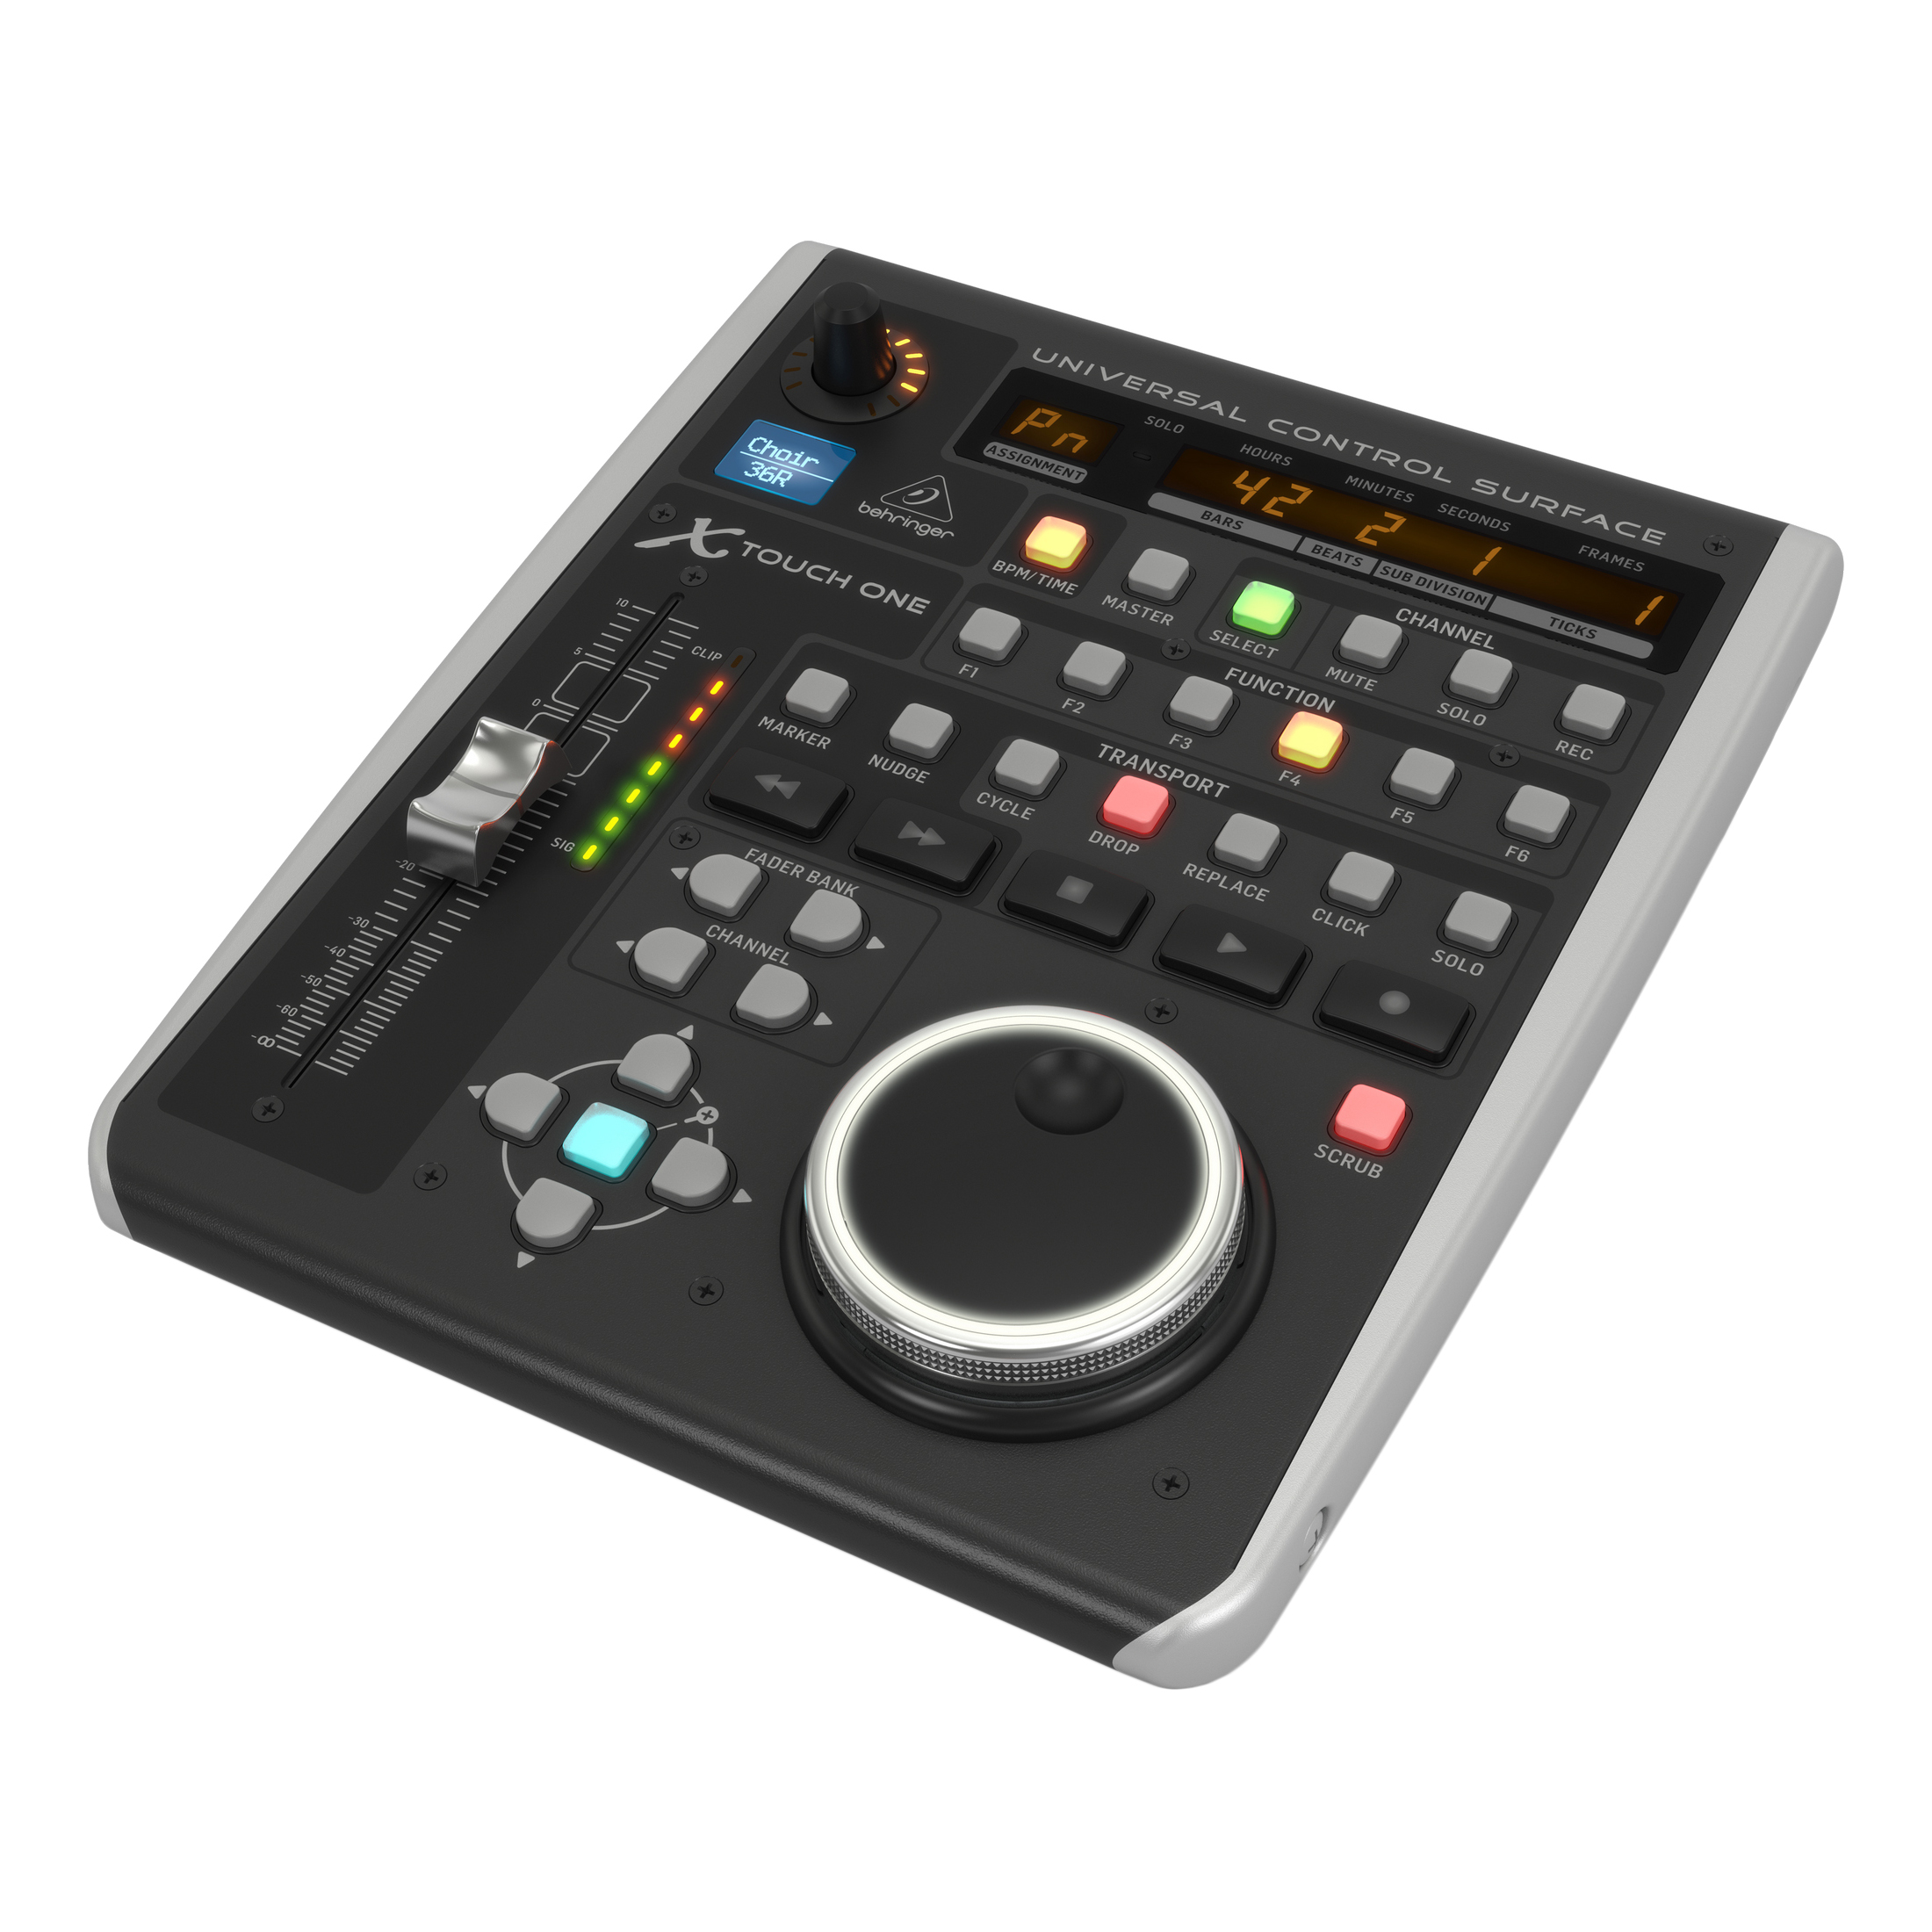 MIDI музыкальные системы (интерфейсы, контроллеры) Behringer X-TOUCH ONE 6av2 123 2db03 0ax0 6av2123 touch pad